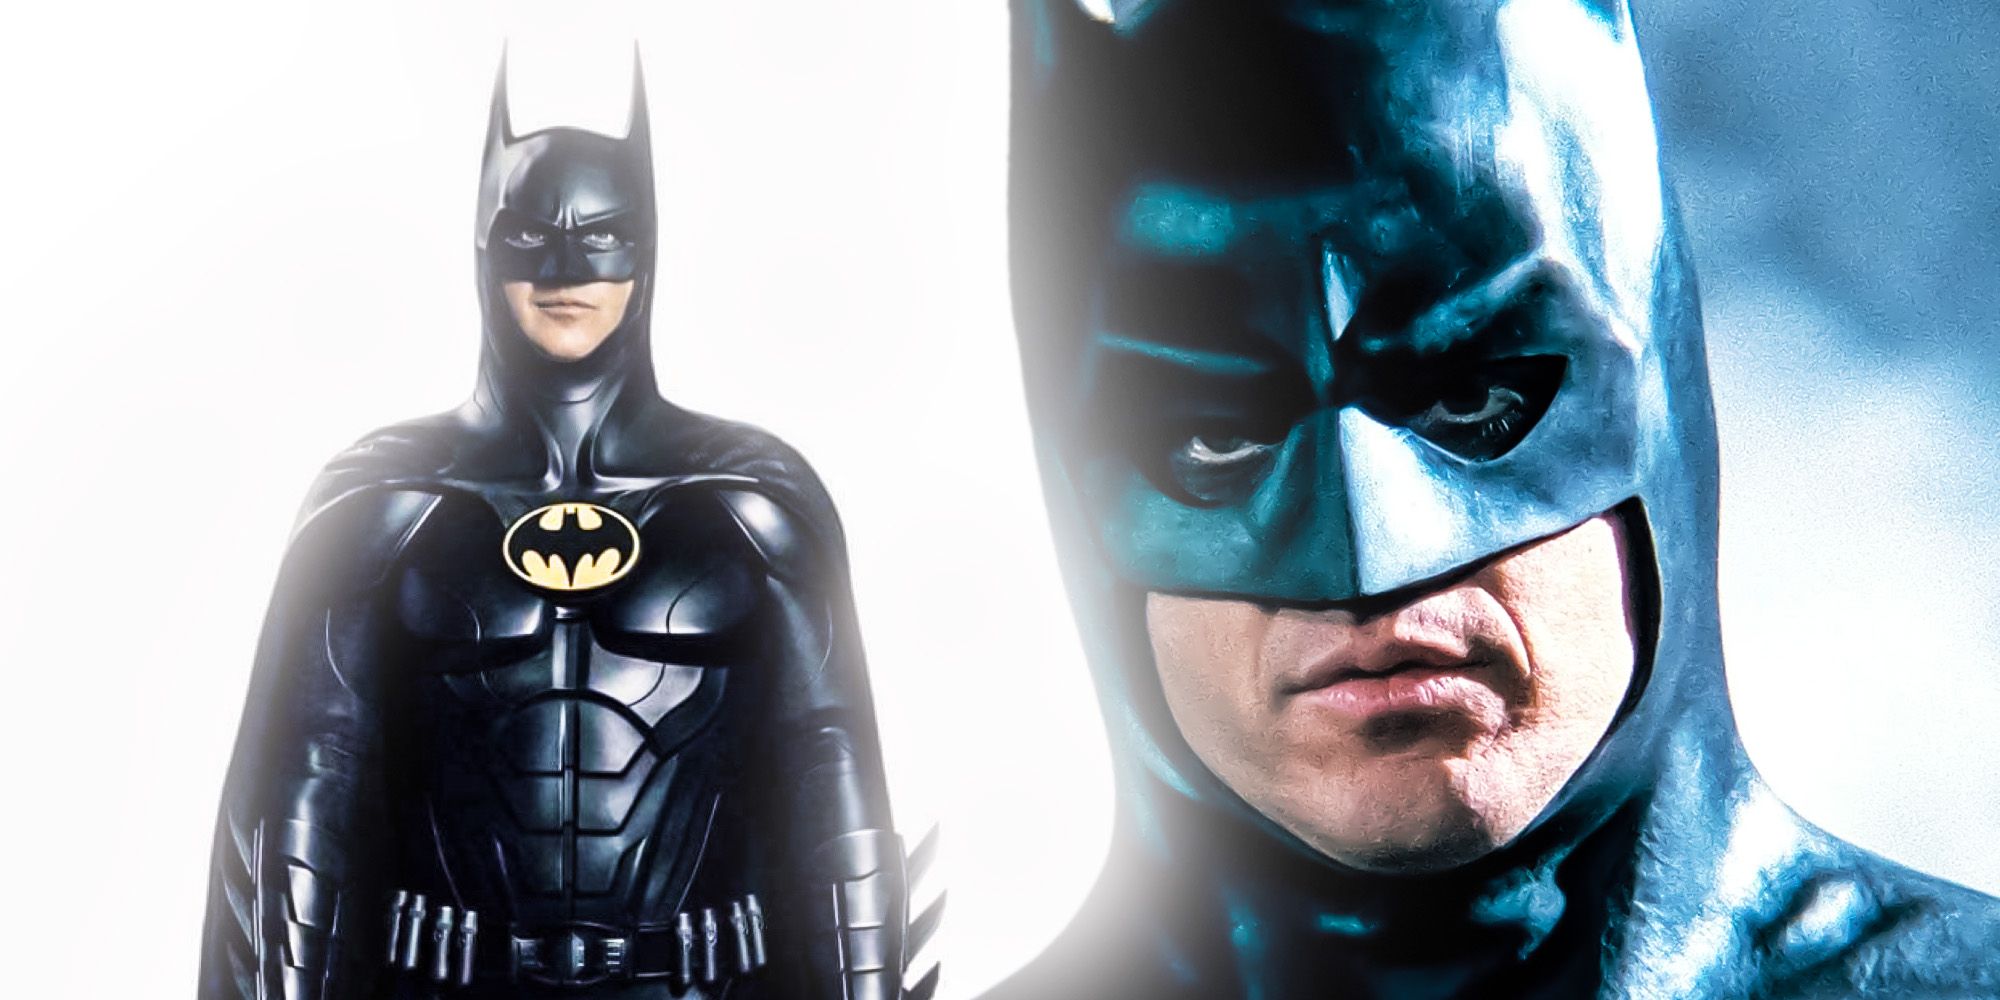 Michael Keatons DCEU Batman Suit all differences